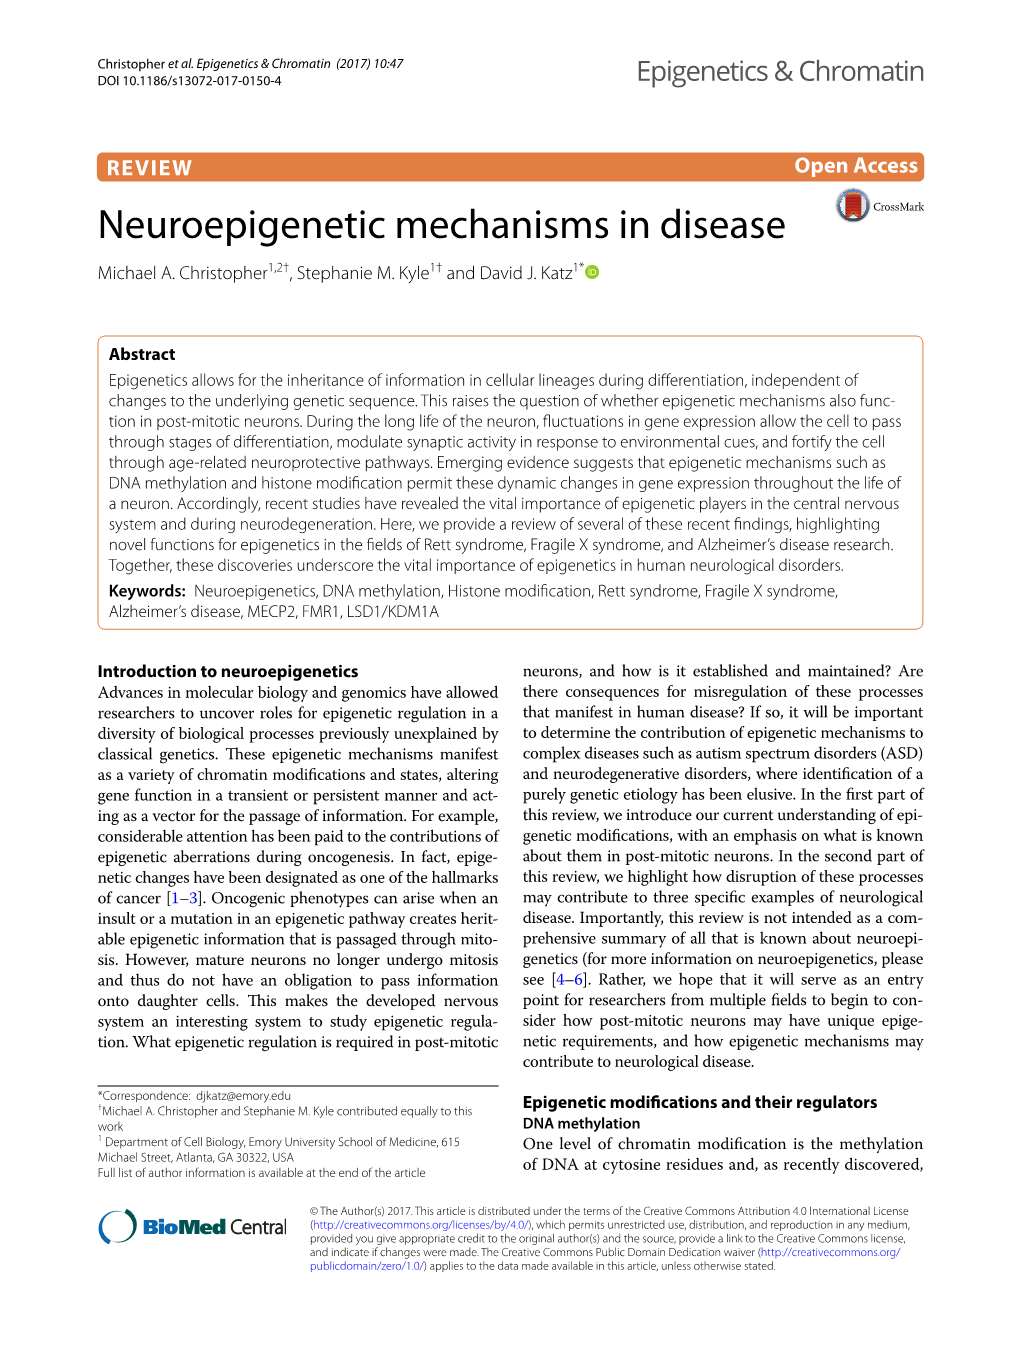 Neuroepigenetic Mechanisms in Disease Michael A